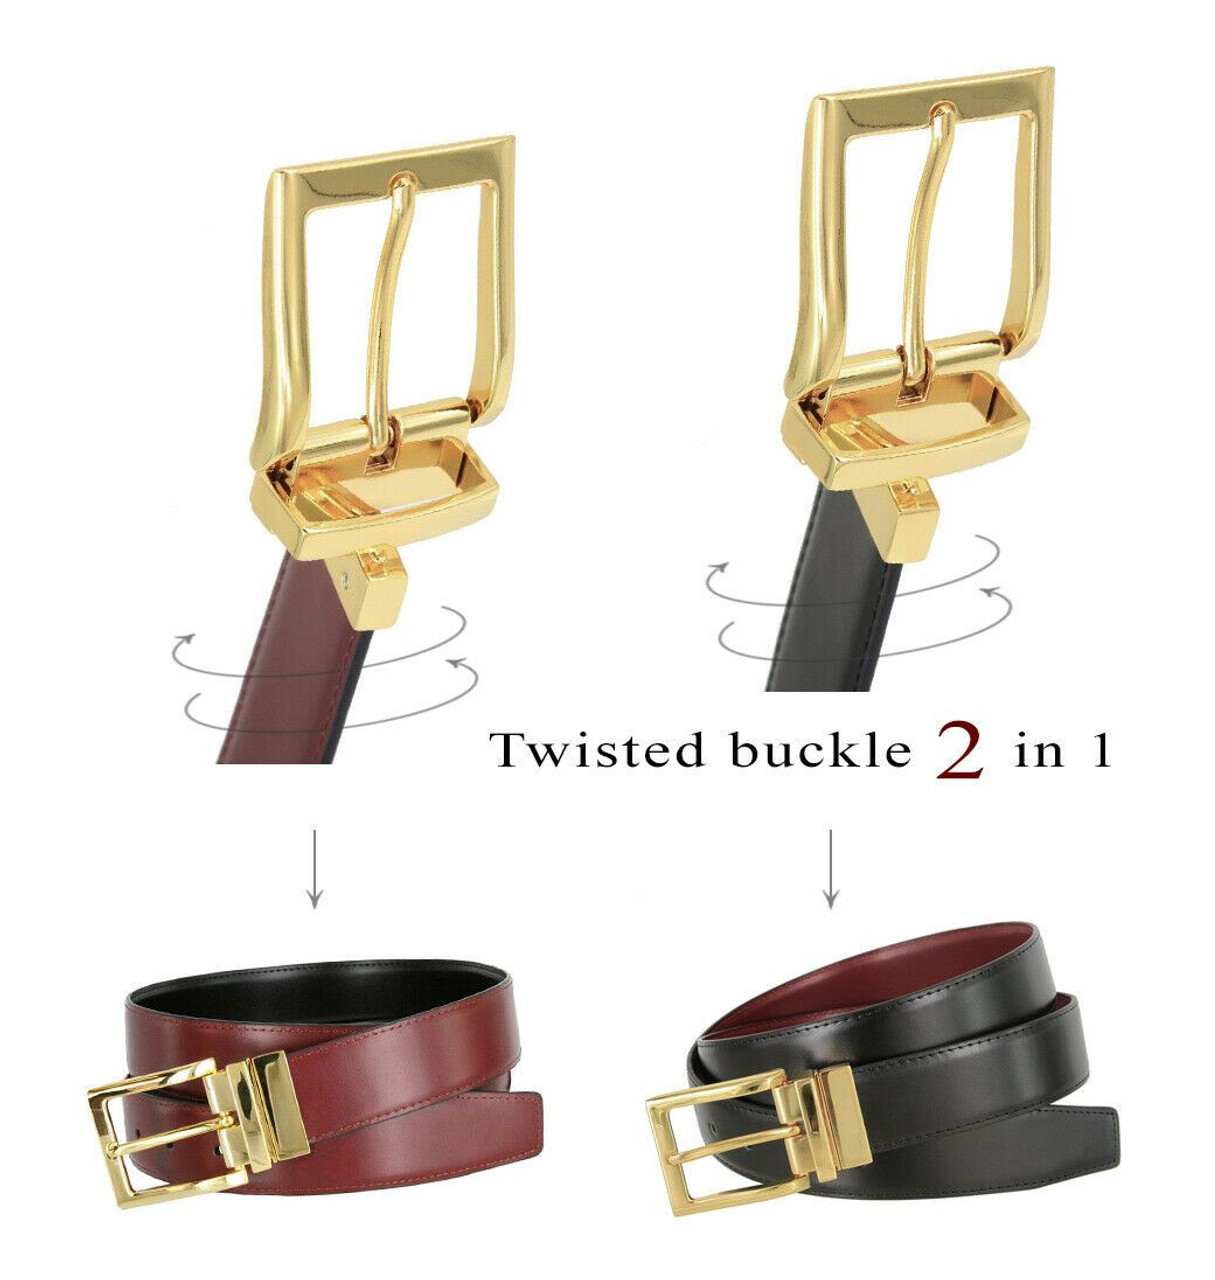 Men's Designer Leather Belts, Dress & Casual